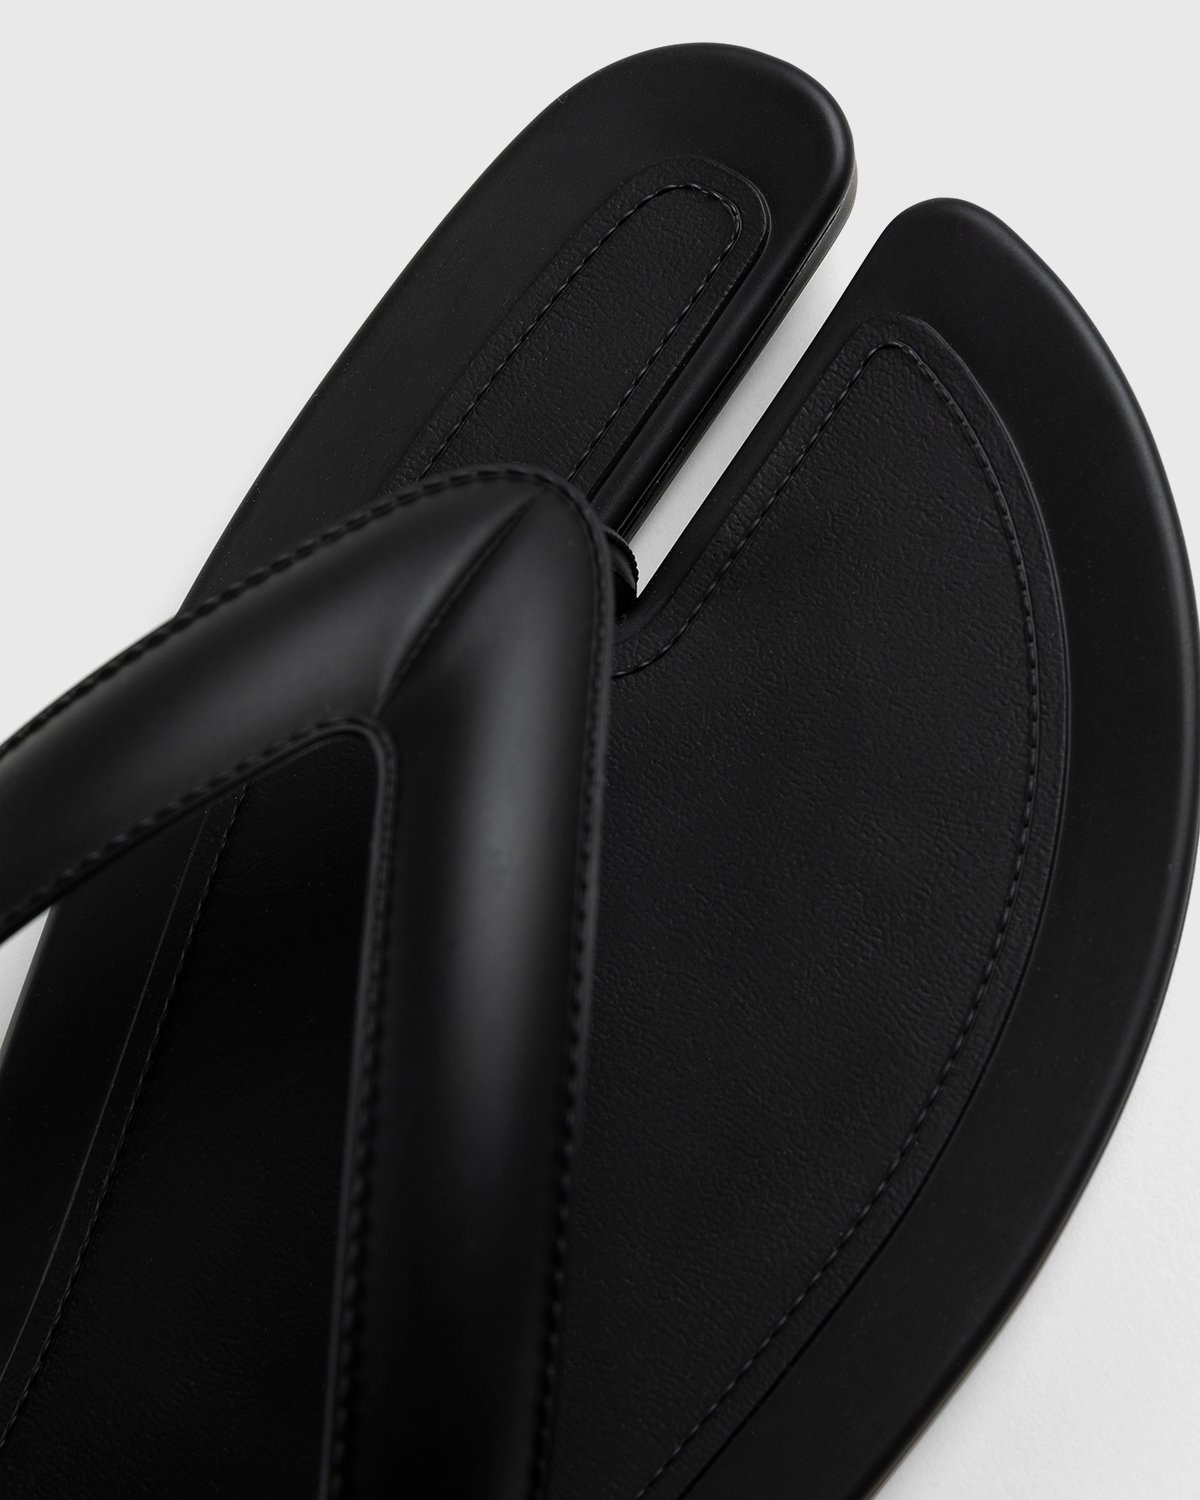 Maison Margiela – Tabi Flip-Flops Black - Sandals & Slides - Black - Image 5